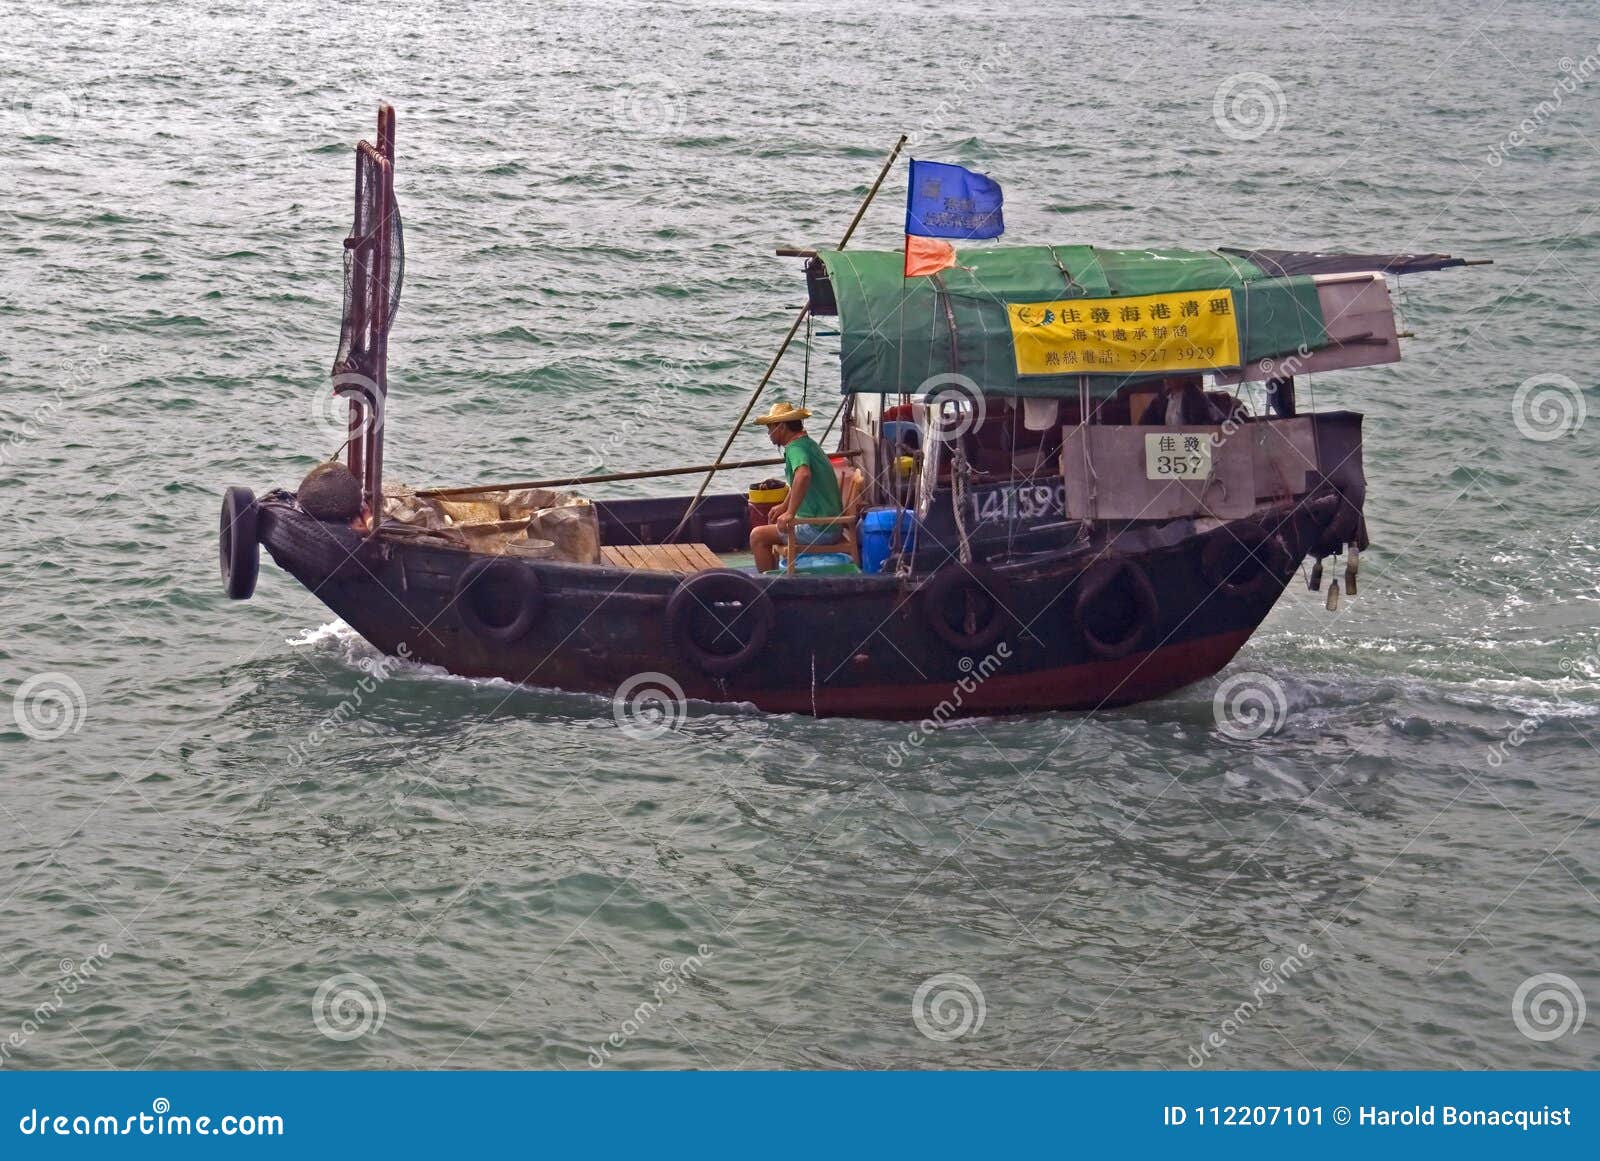 Chinese Sampan Sailing in a Hong Kong Bay Editorial Photo - Image